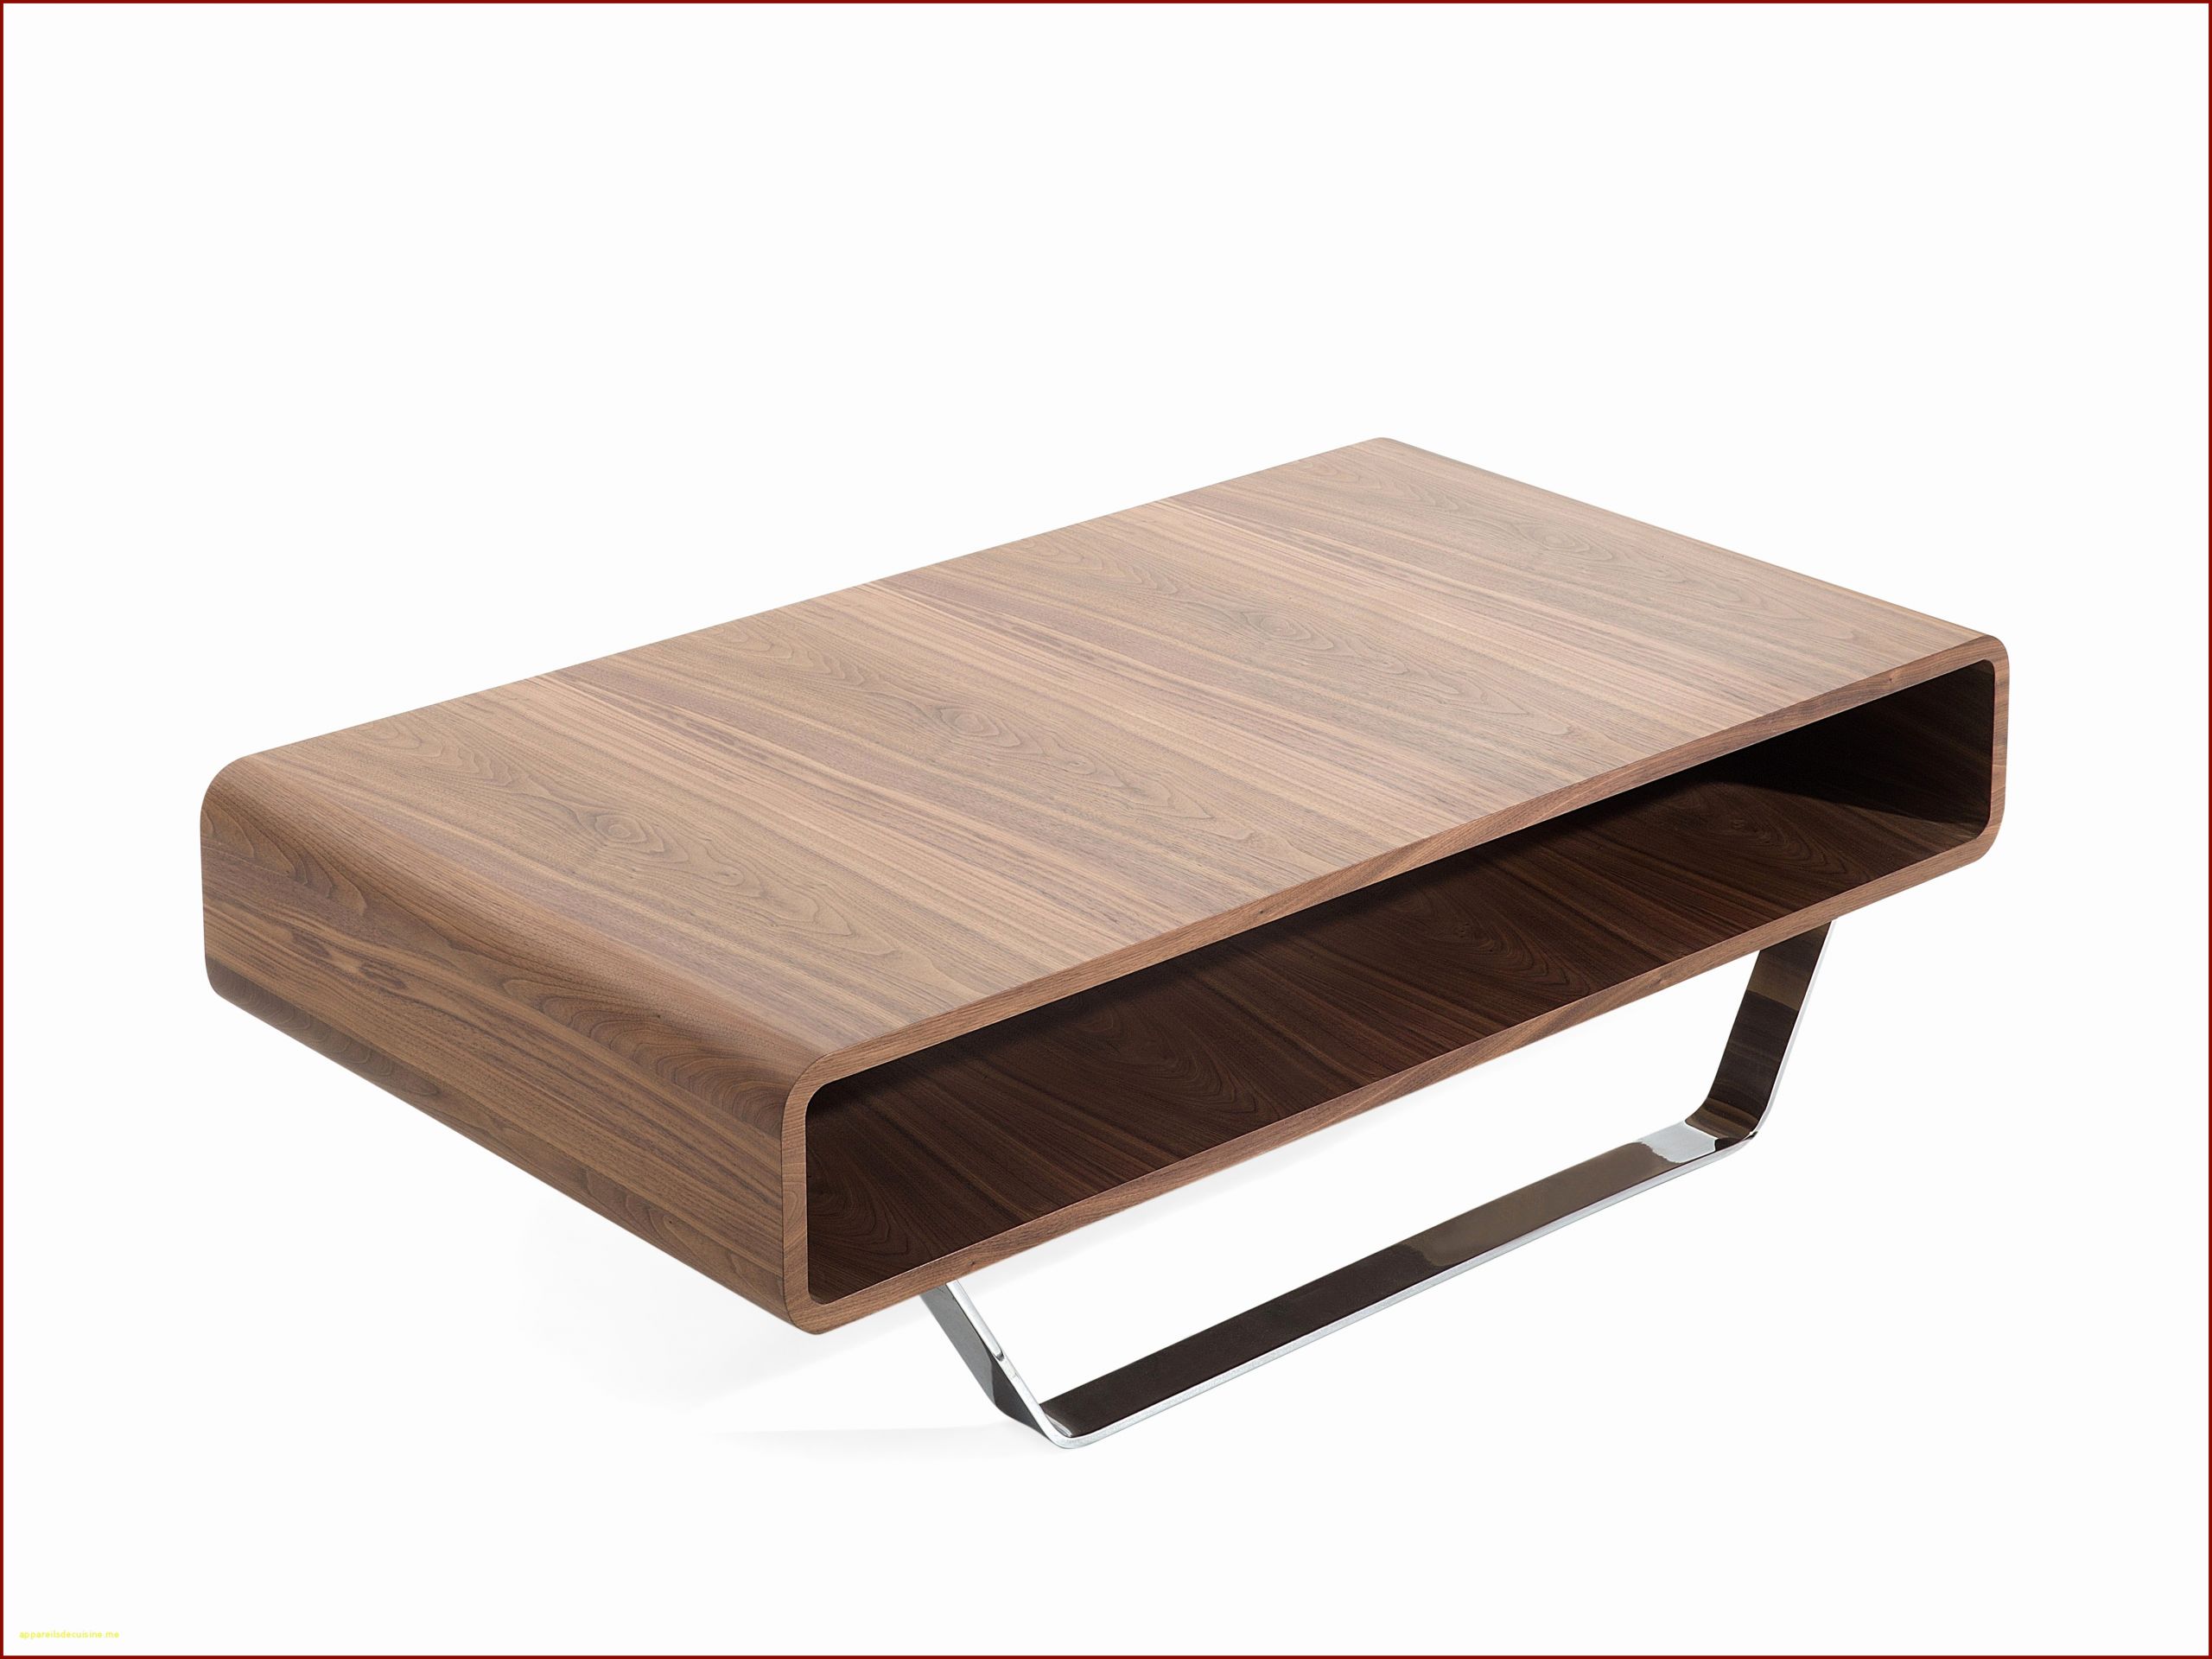 pietement de table impressionnant beau meuble table basse fresh pied de table basse meuble ipn 0d of pietement de table